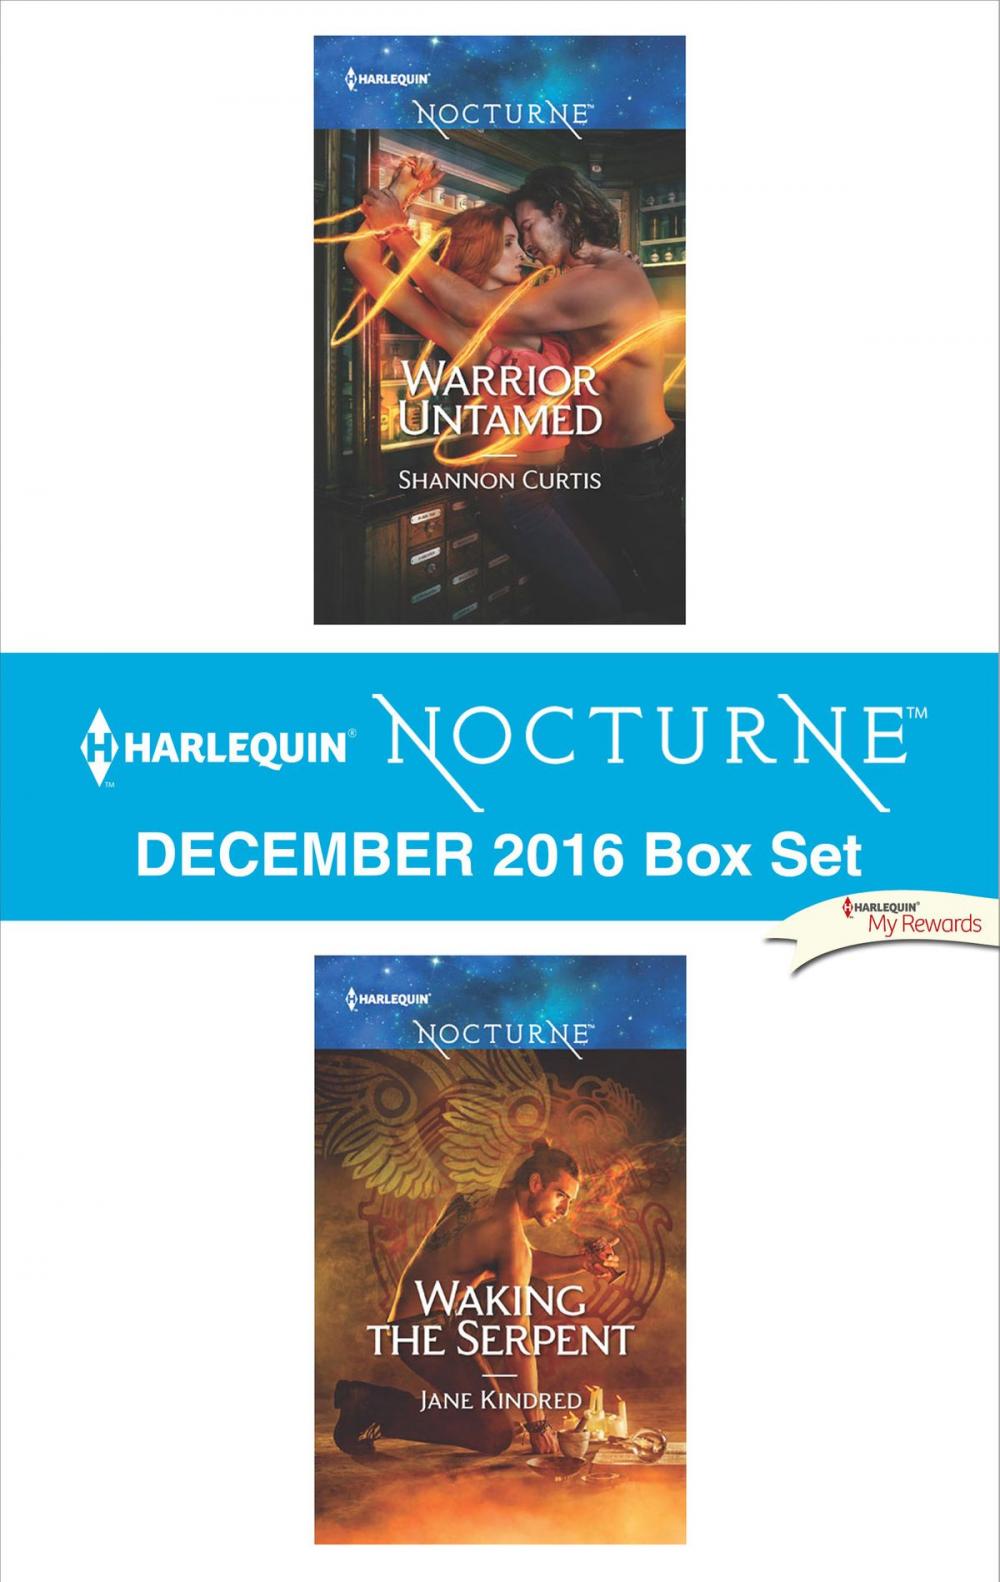 Big bigCover of Harlequin Nocturne December 2016 Box Set